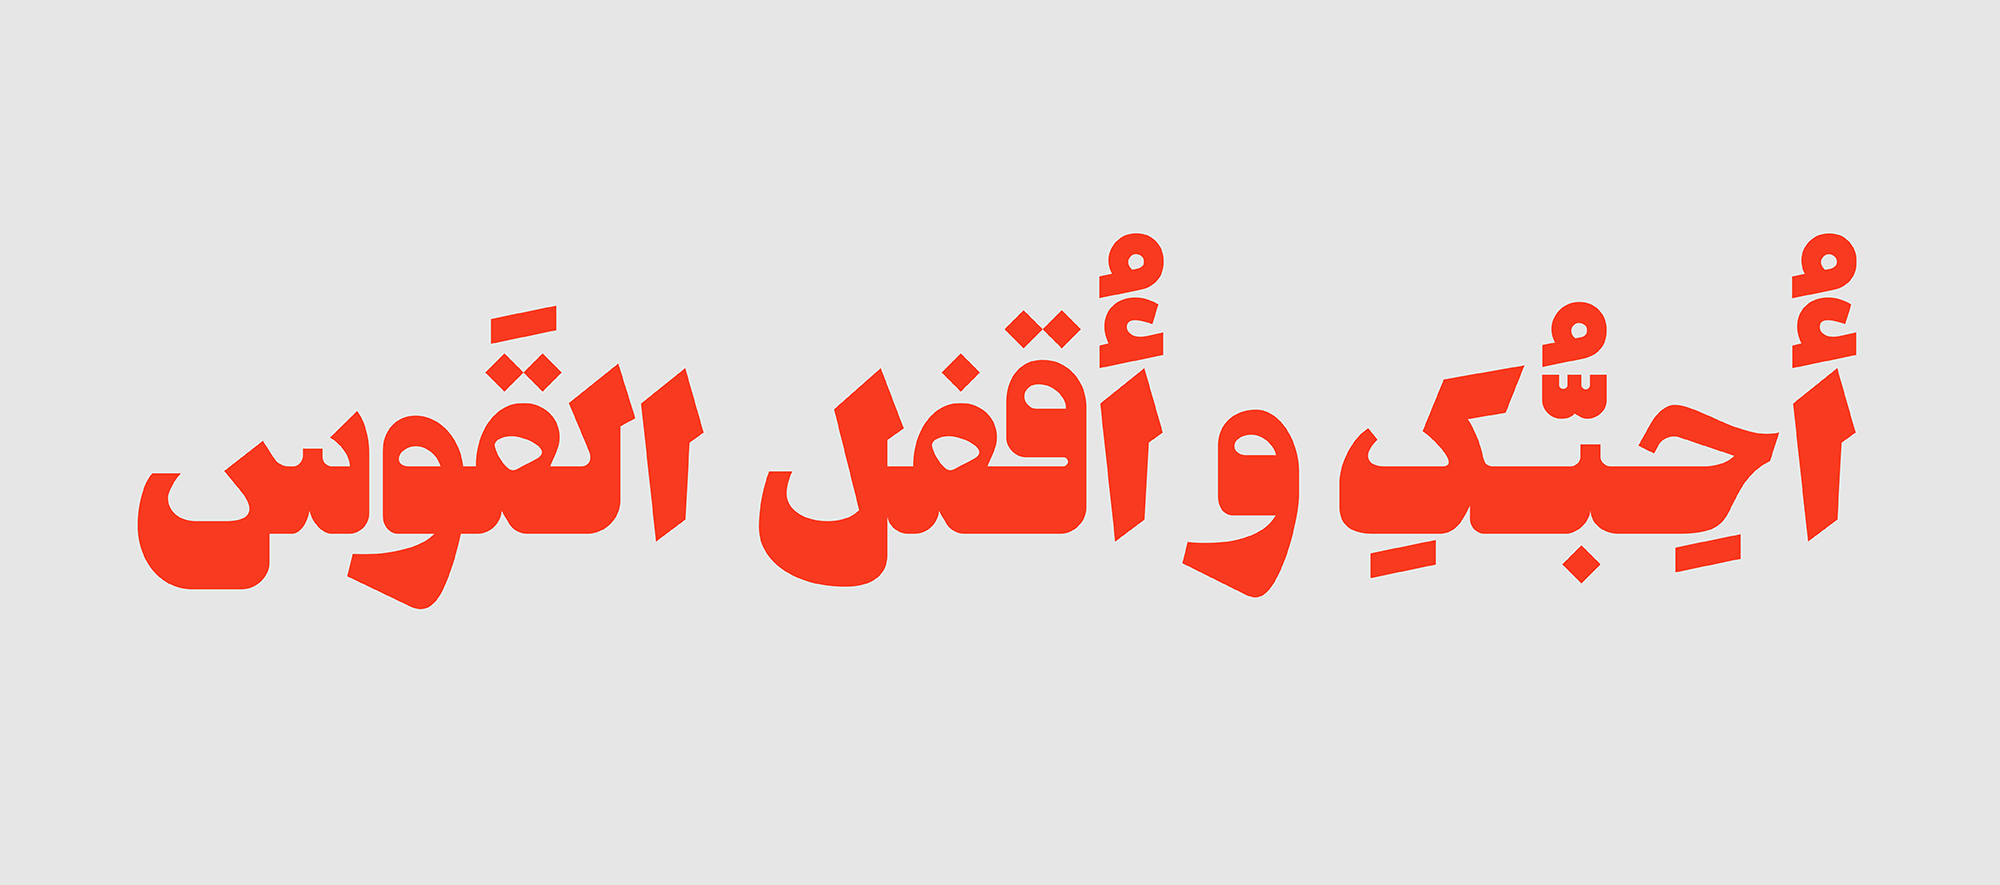 Saad-v2-Arabic